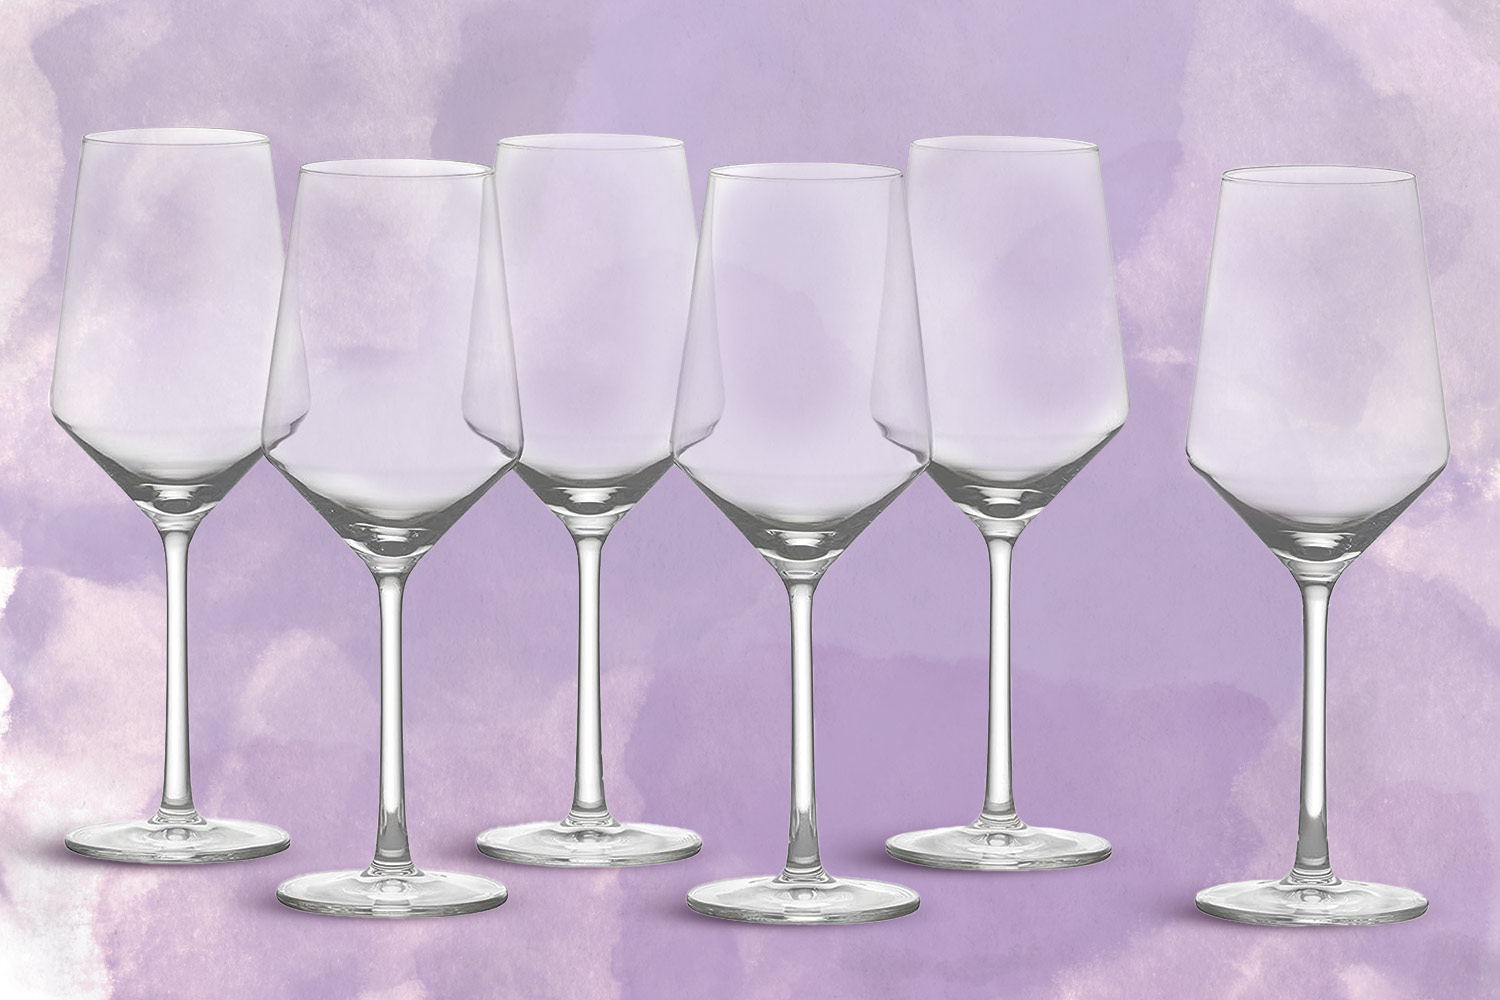 Aspen White Wine Glasses, Set of 8 + Reviews